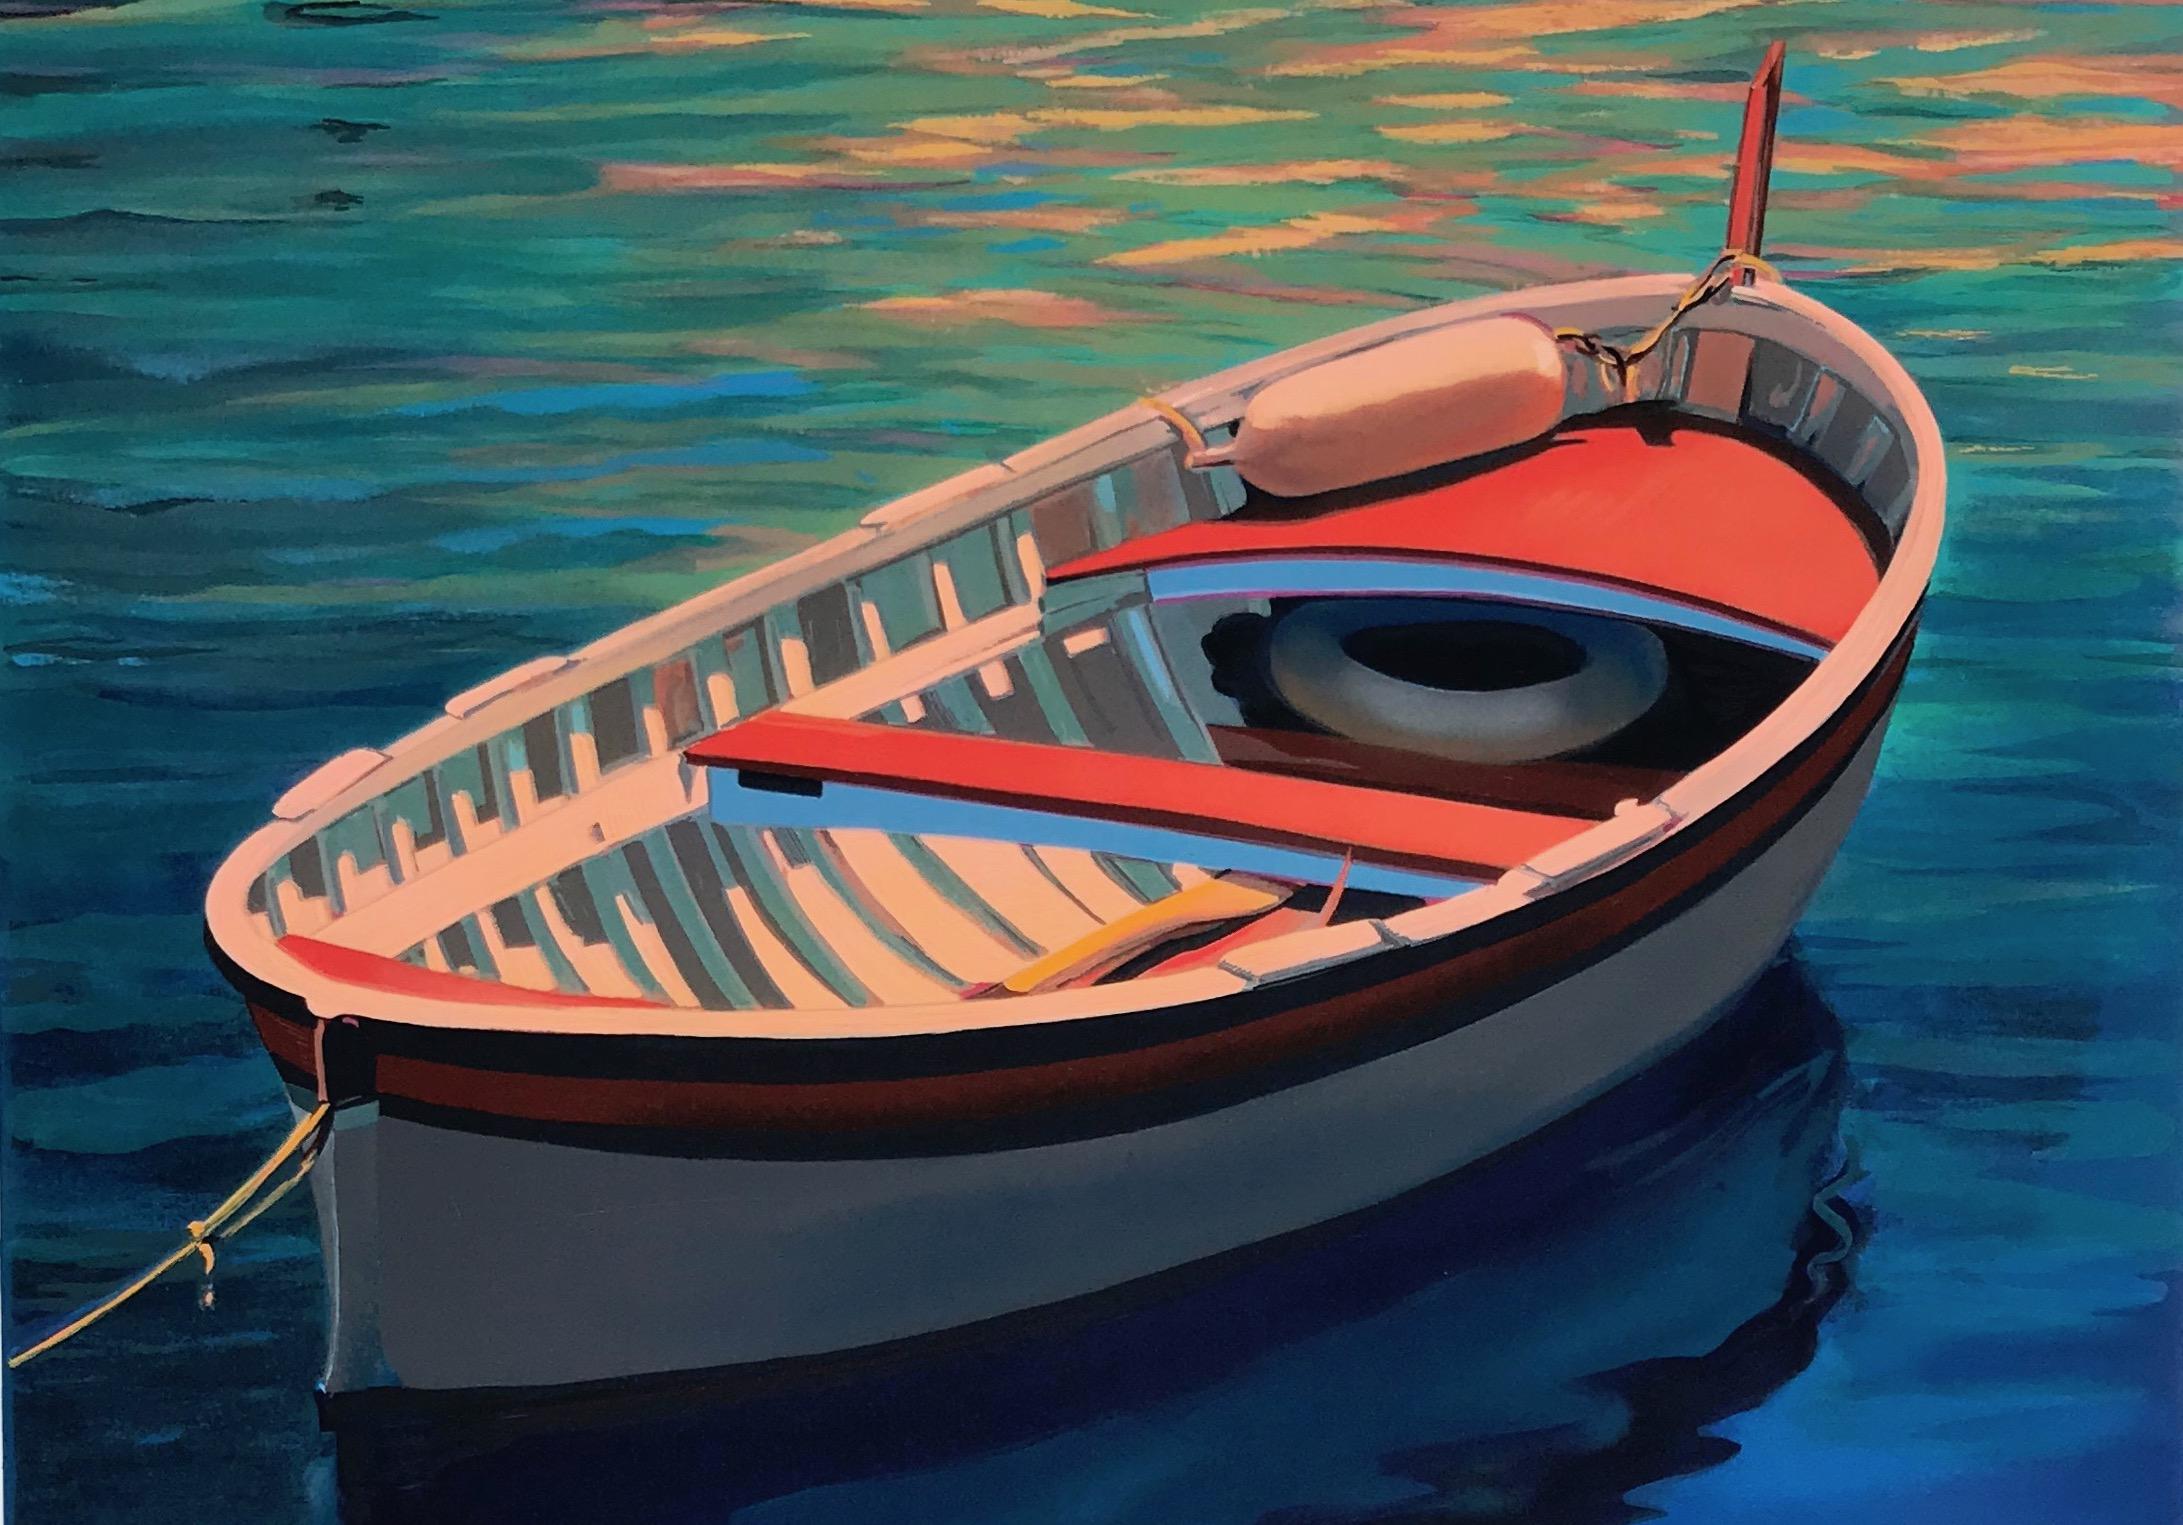  « Harbor Rainbow », bateau coloré aux reflets d'eau bleu profond sérigraphié - Print de Tom Swimm